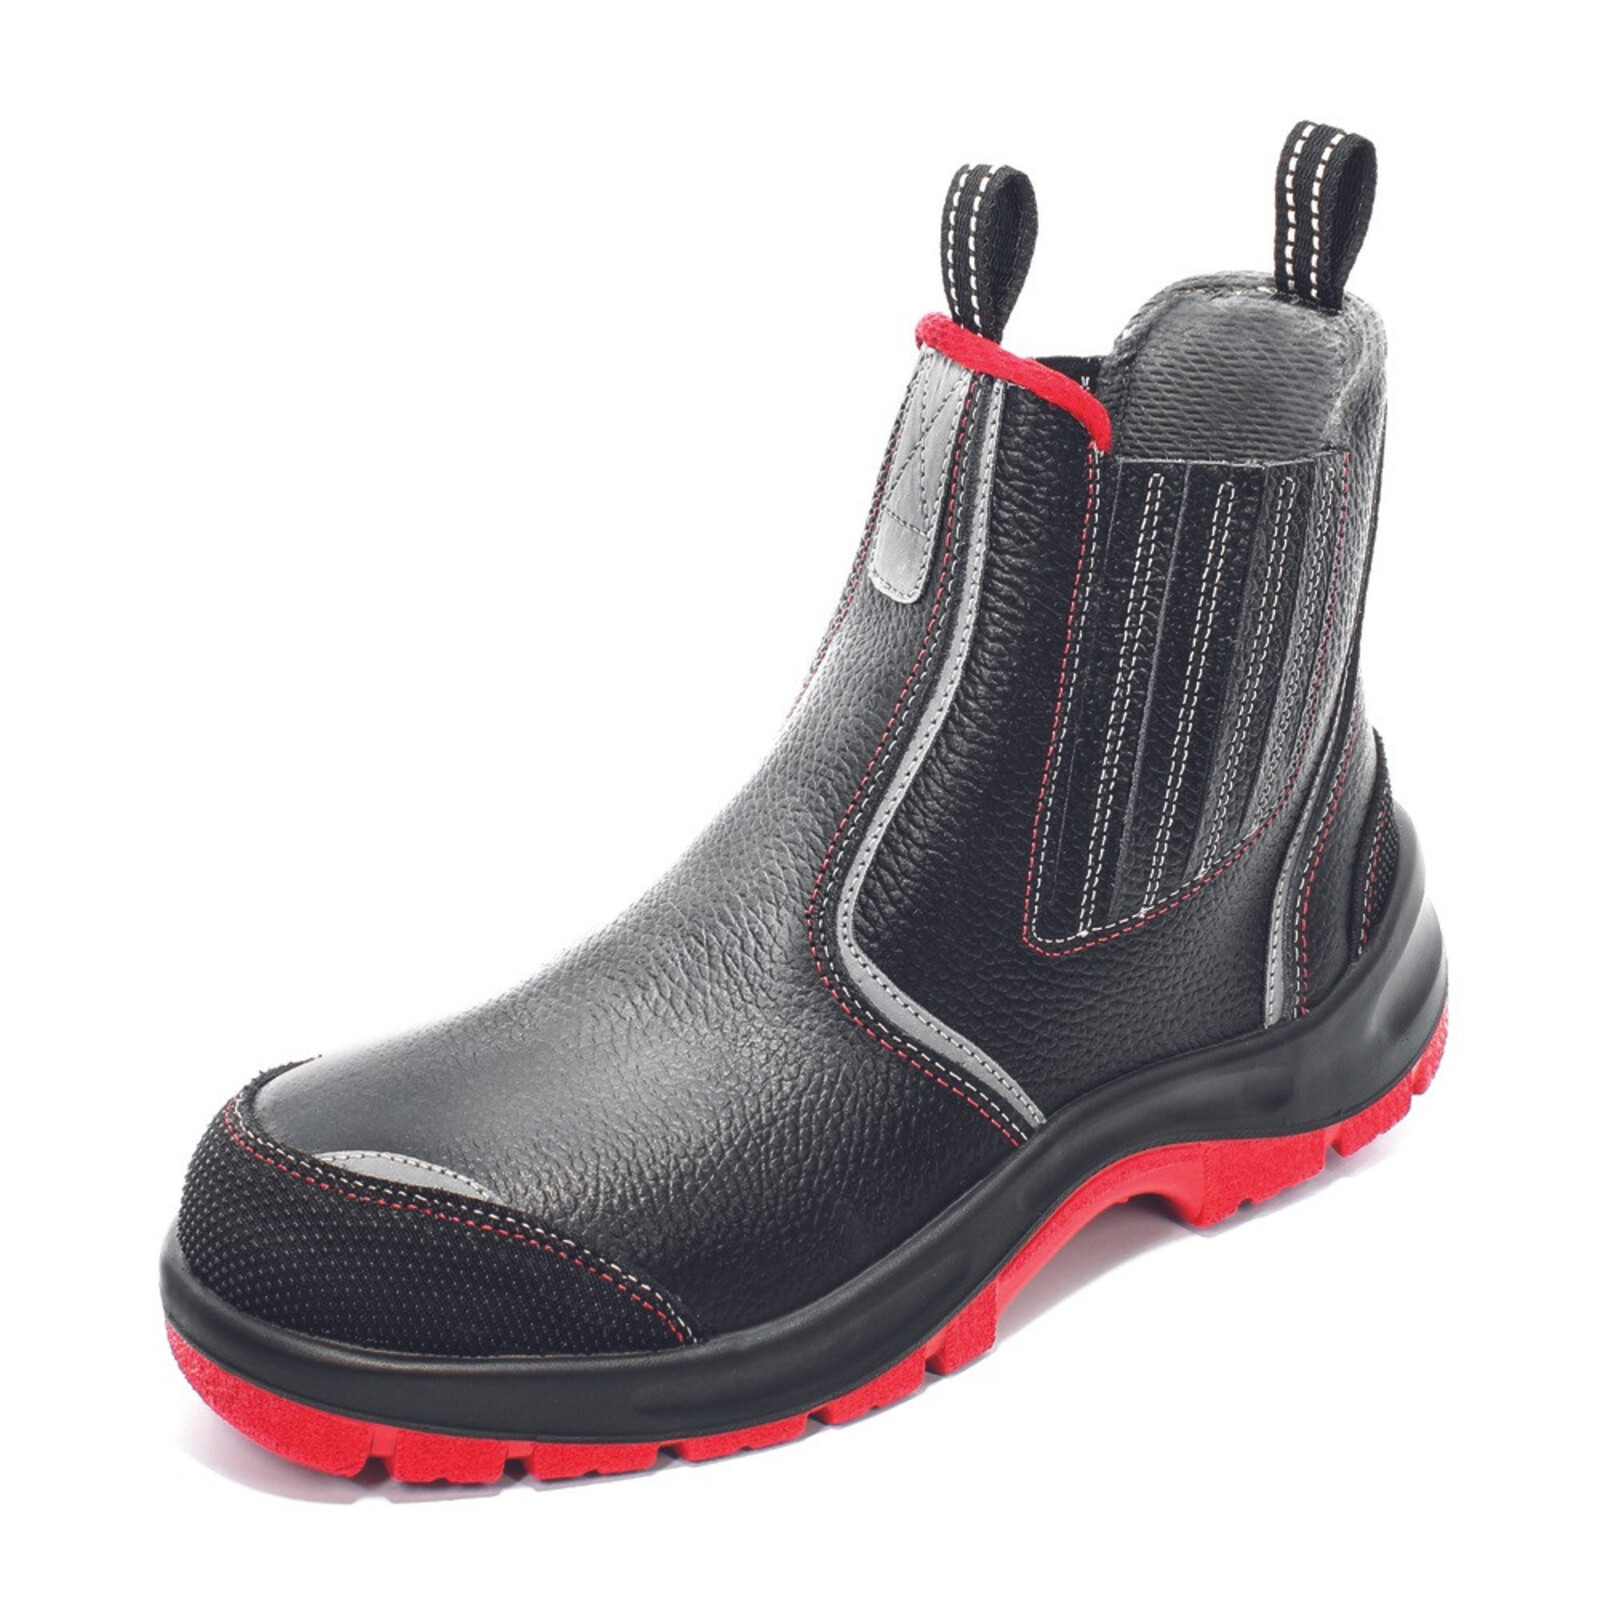 Bezpečnostná členková obuv Panda Strong Nuovo Eurotech MF S3 SRC - veľkosť: 40, farba: čierna/červená